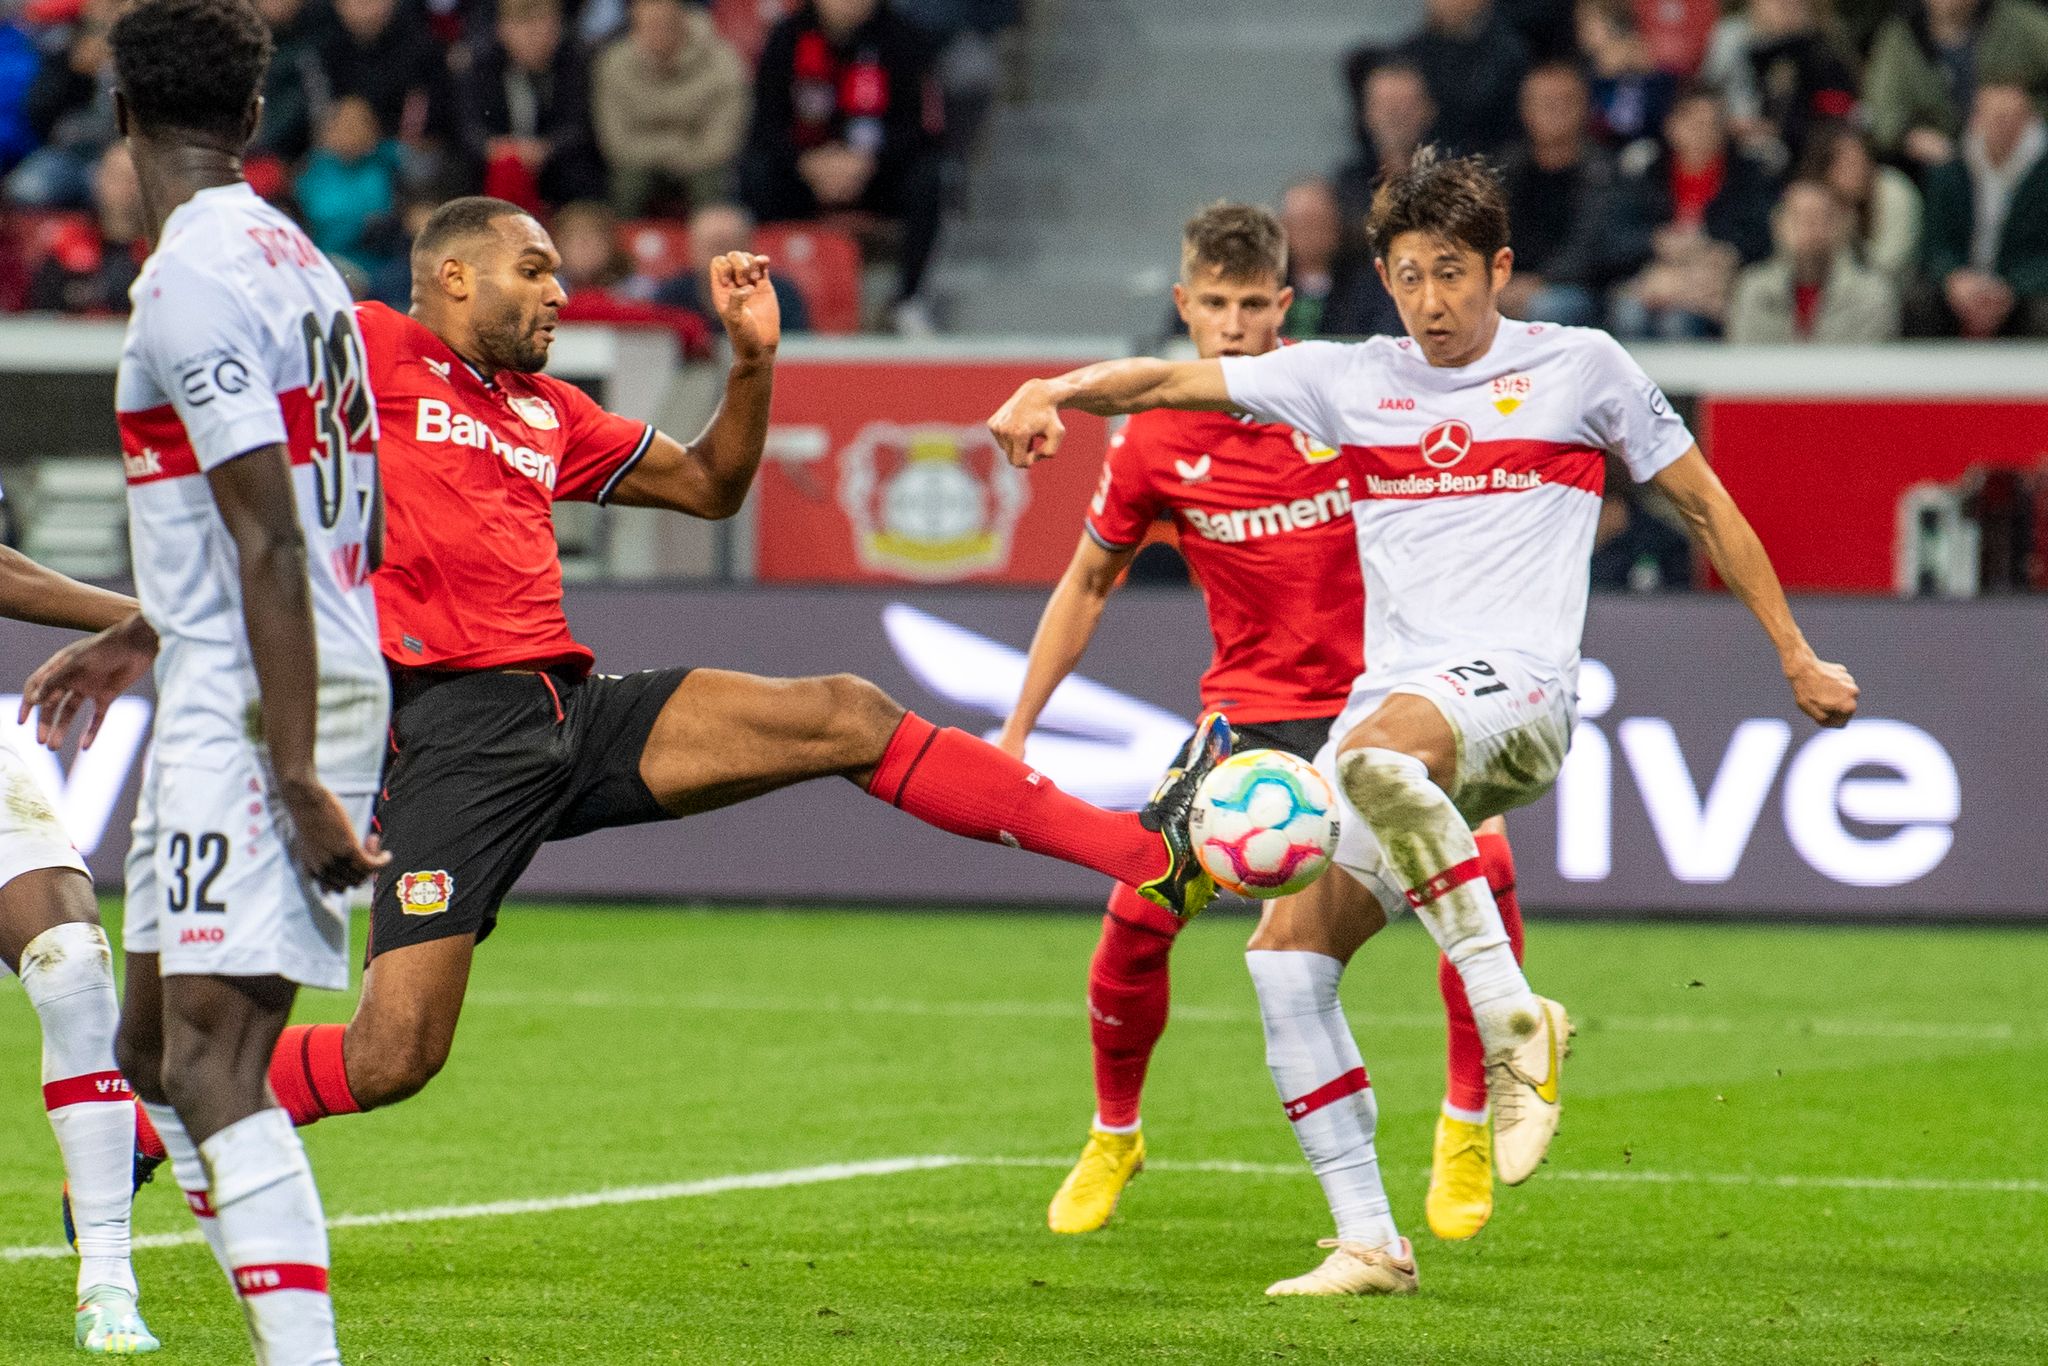 Leverkusens Jonathan Tah macht das Tor zum 2:0.